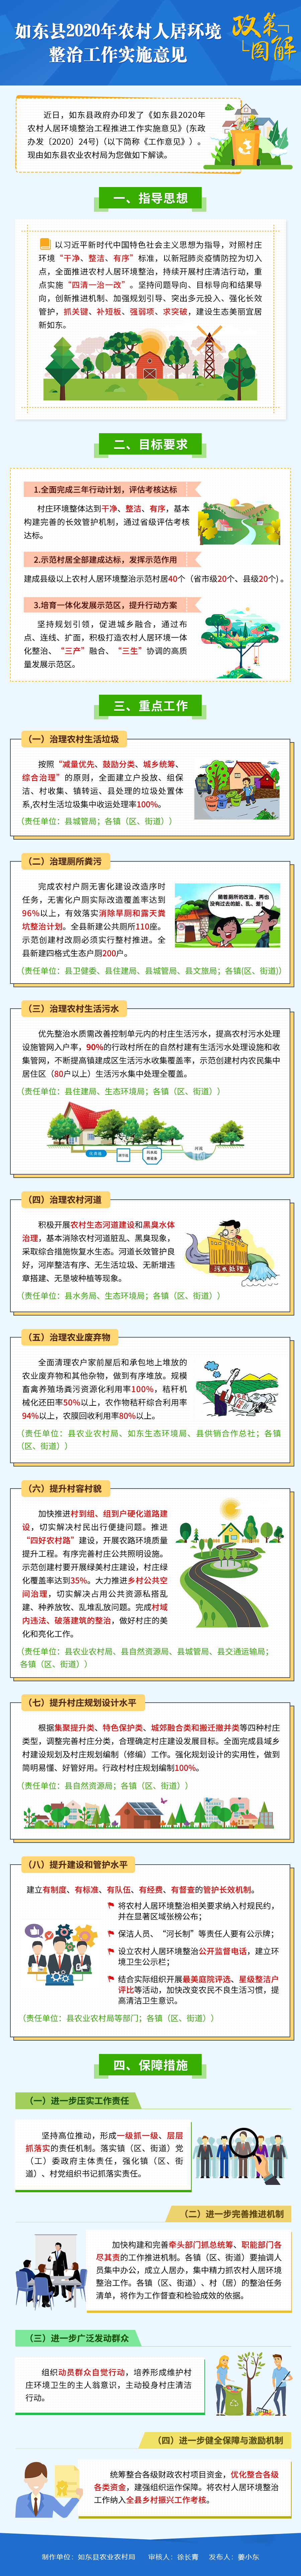 《如东县2020年农村人居环境整治工作》政策图解-200616.png